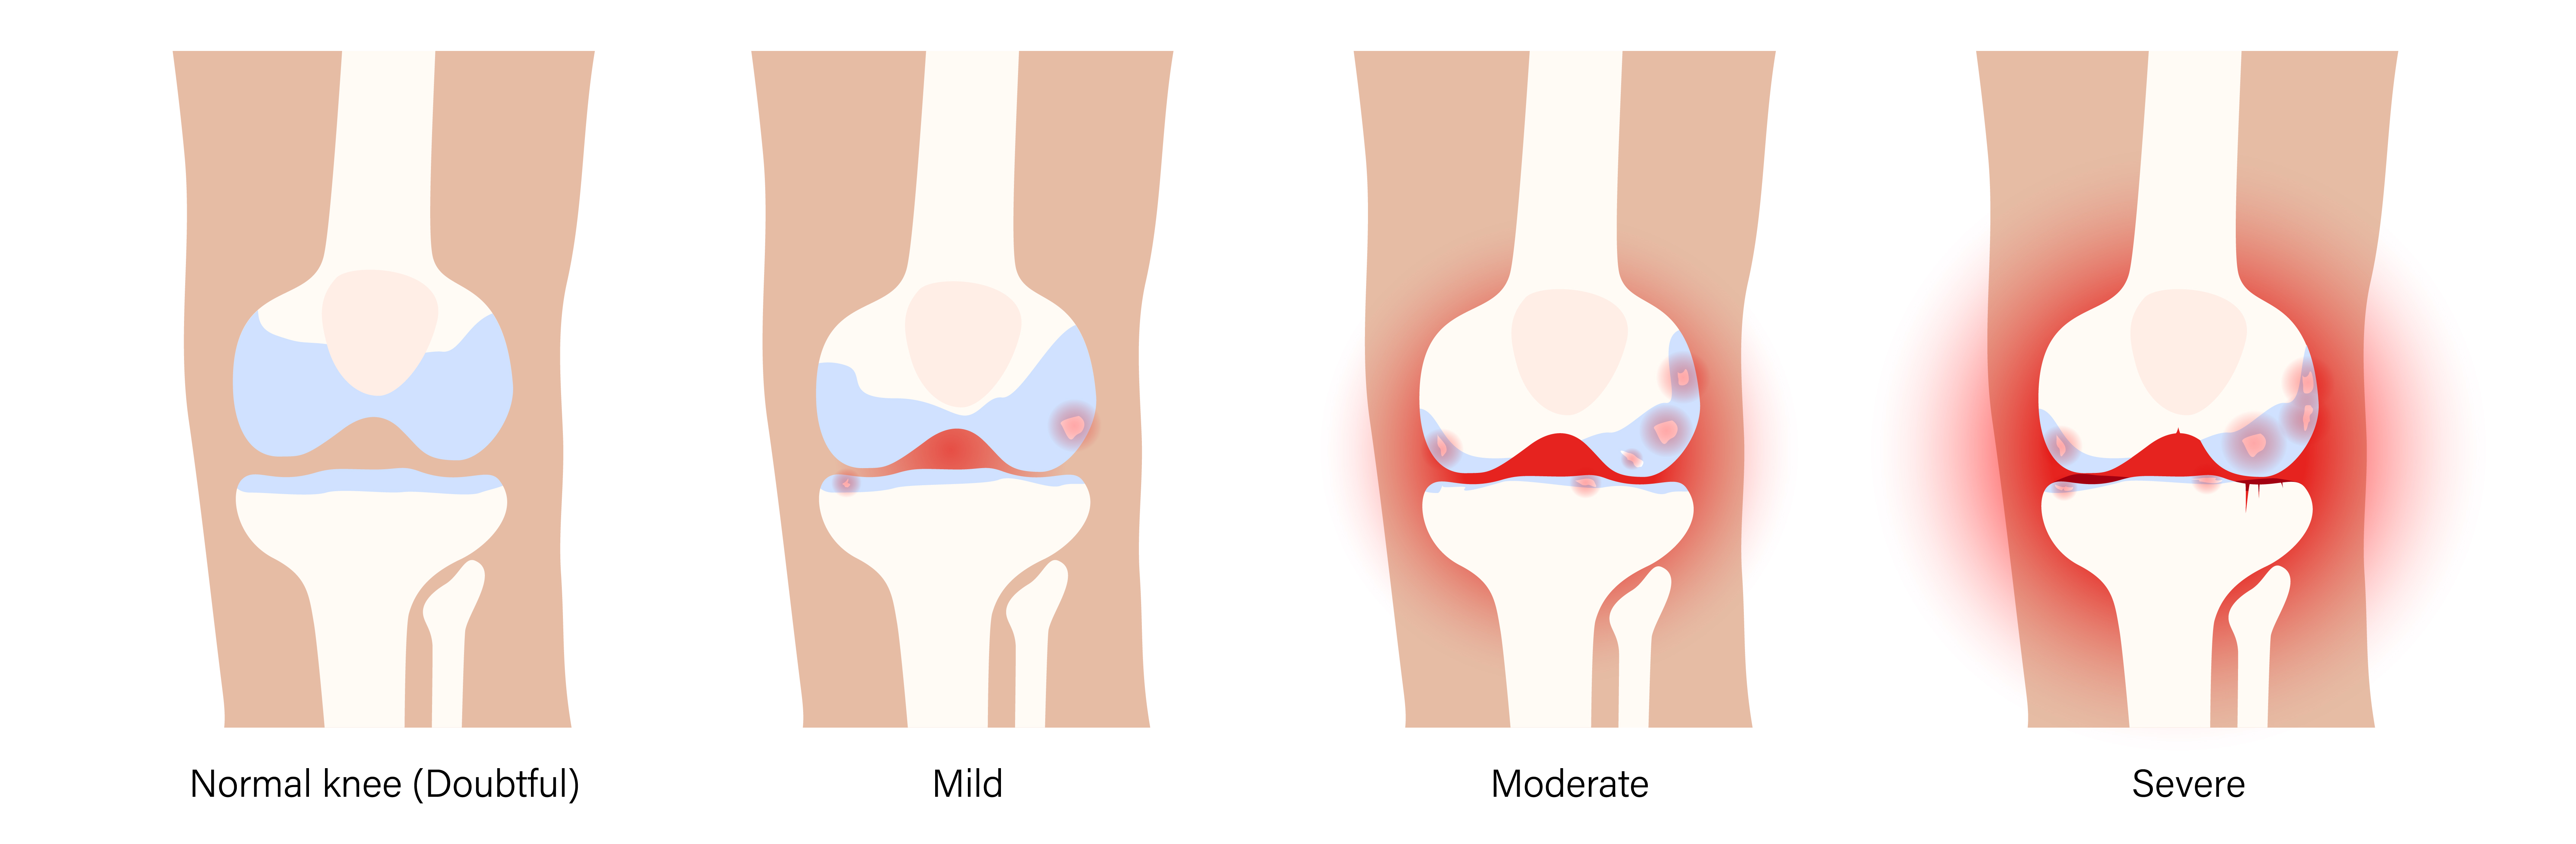 Osteoarthritis vs rheumatoid arthritis: how are they different?